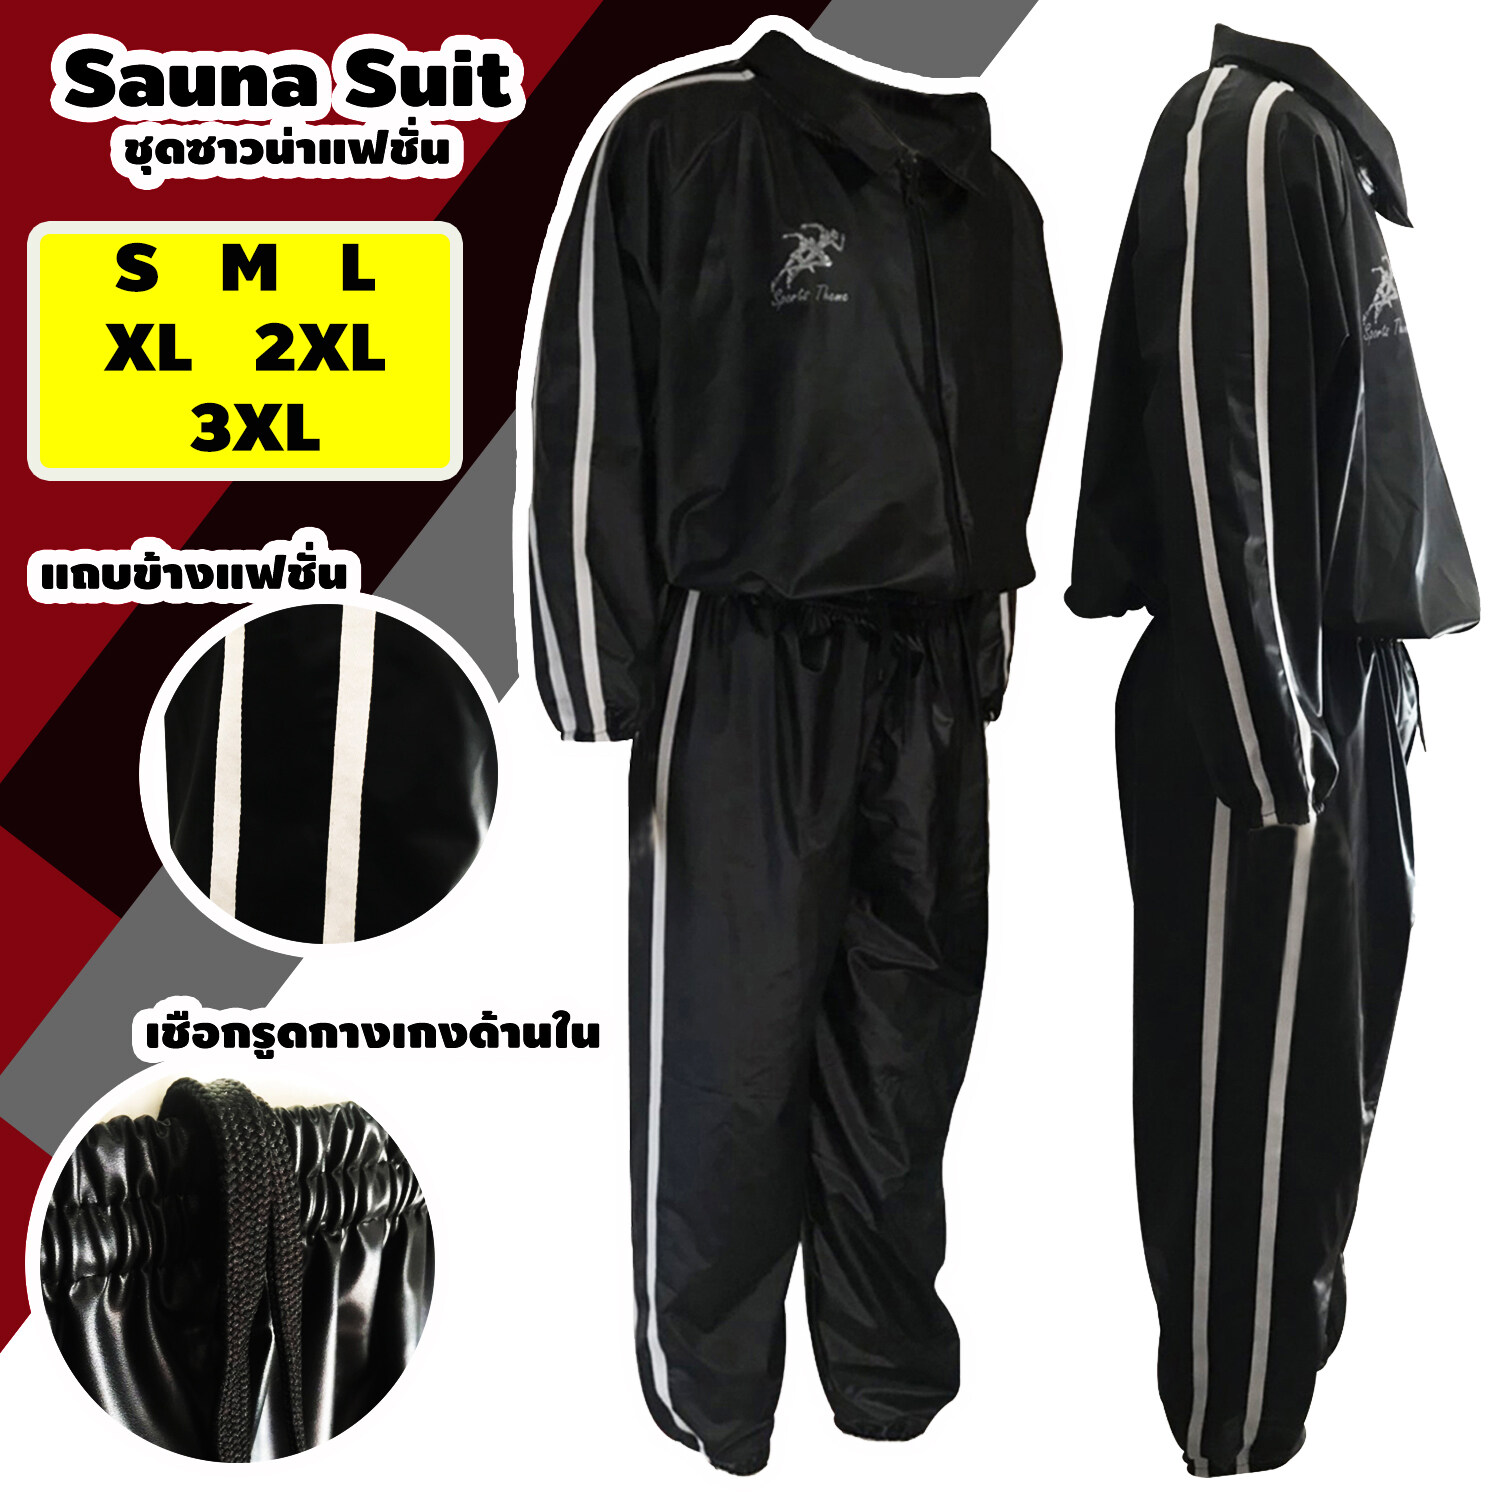 ชุดซาวน่า Sports Theme เสื้อ+กางเกง Sauna Suit ชุดกีฬา รุ่นใหม่ แถบคู่ด้านข้าง ออกกำลังกาย รีดเหงื่อ ลดน้ำหนัก ใส่ฟิตเนสได้